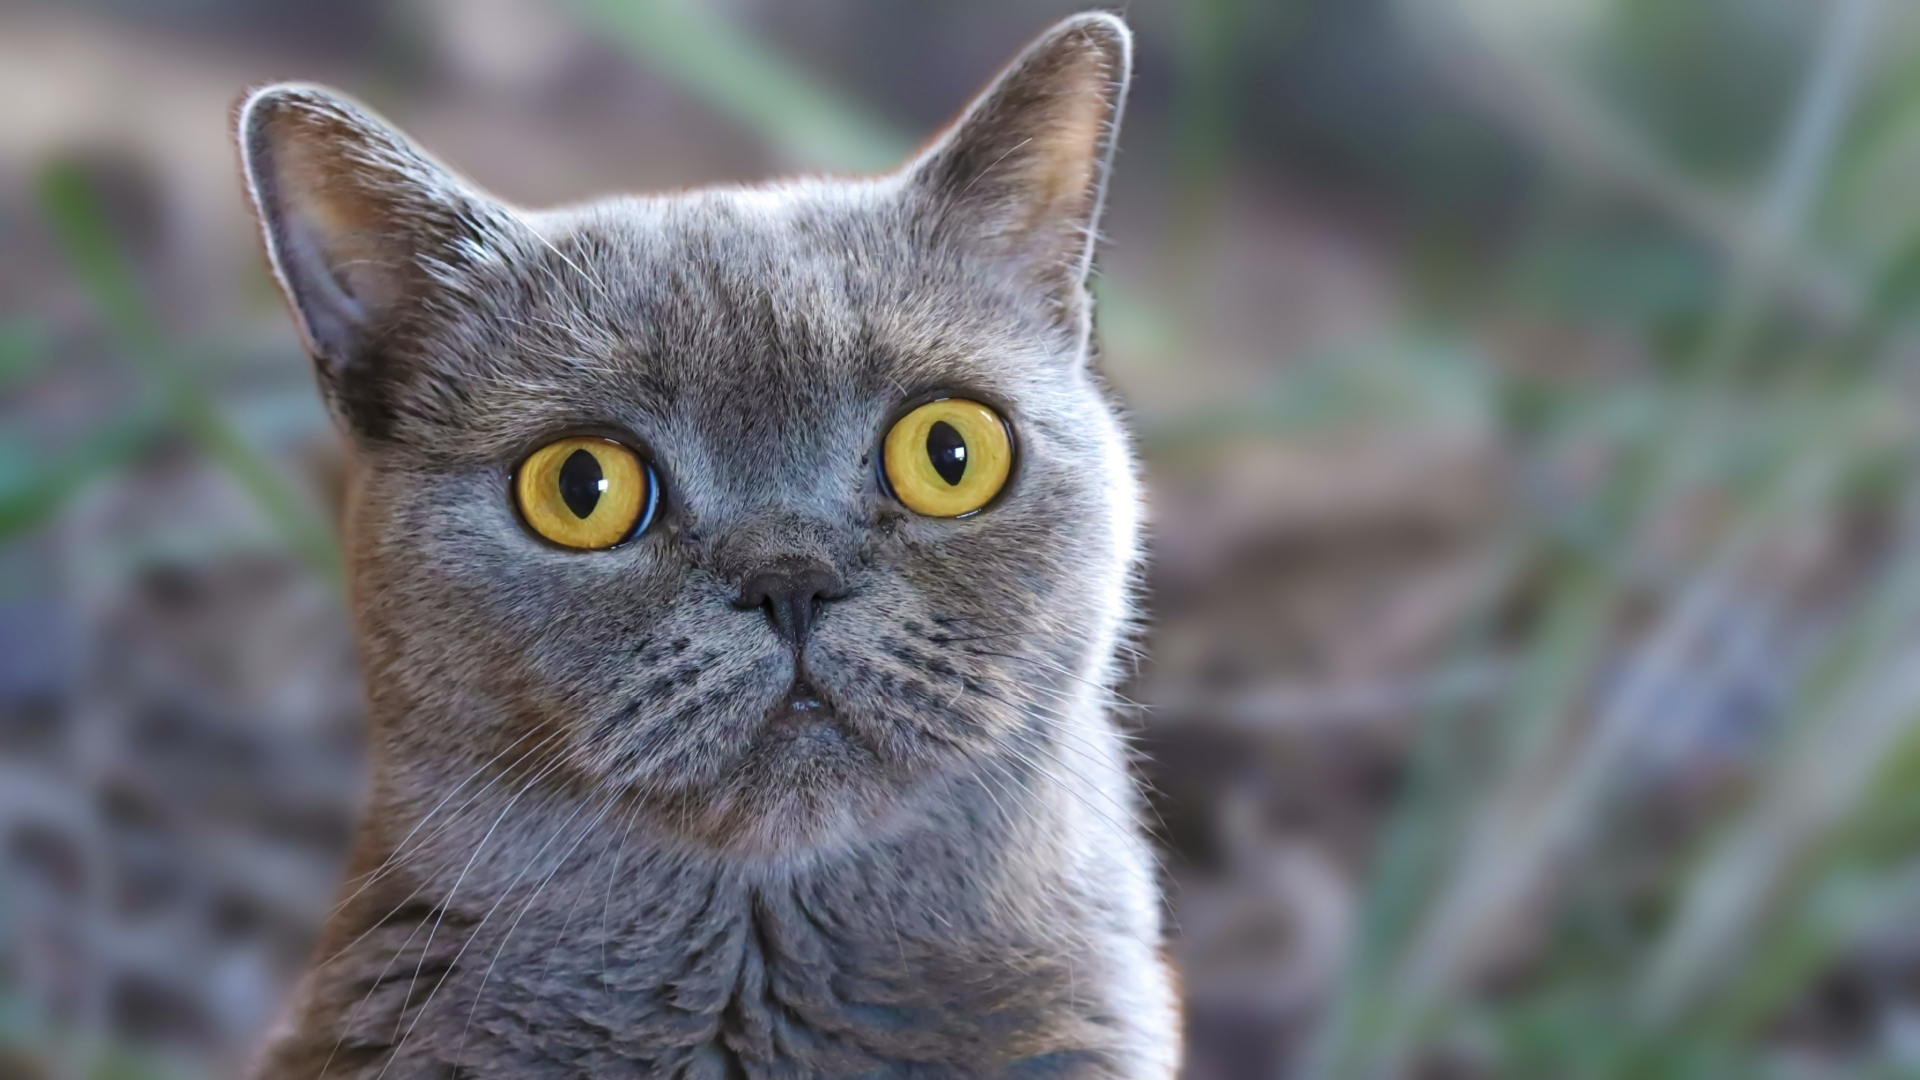 Породистый британский кот с большими желтыми глазами